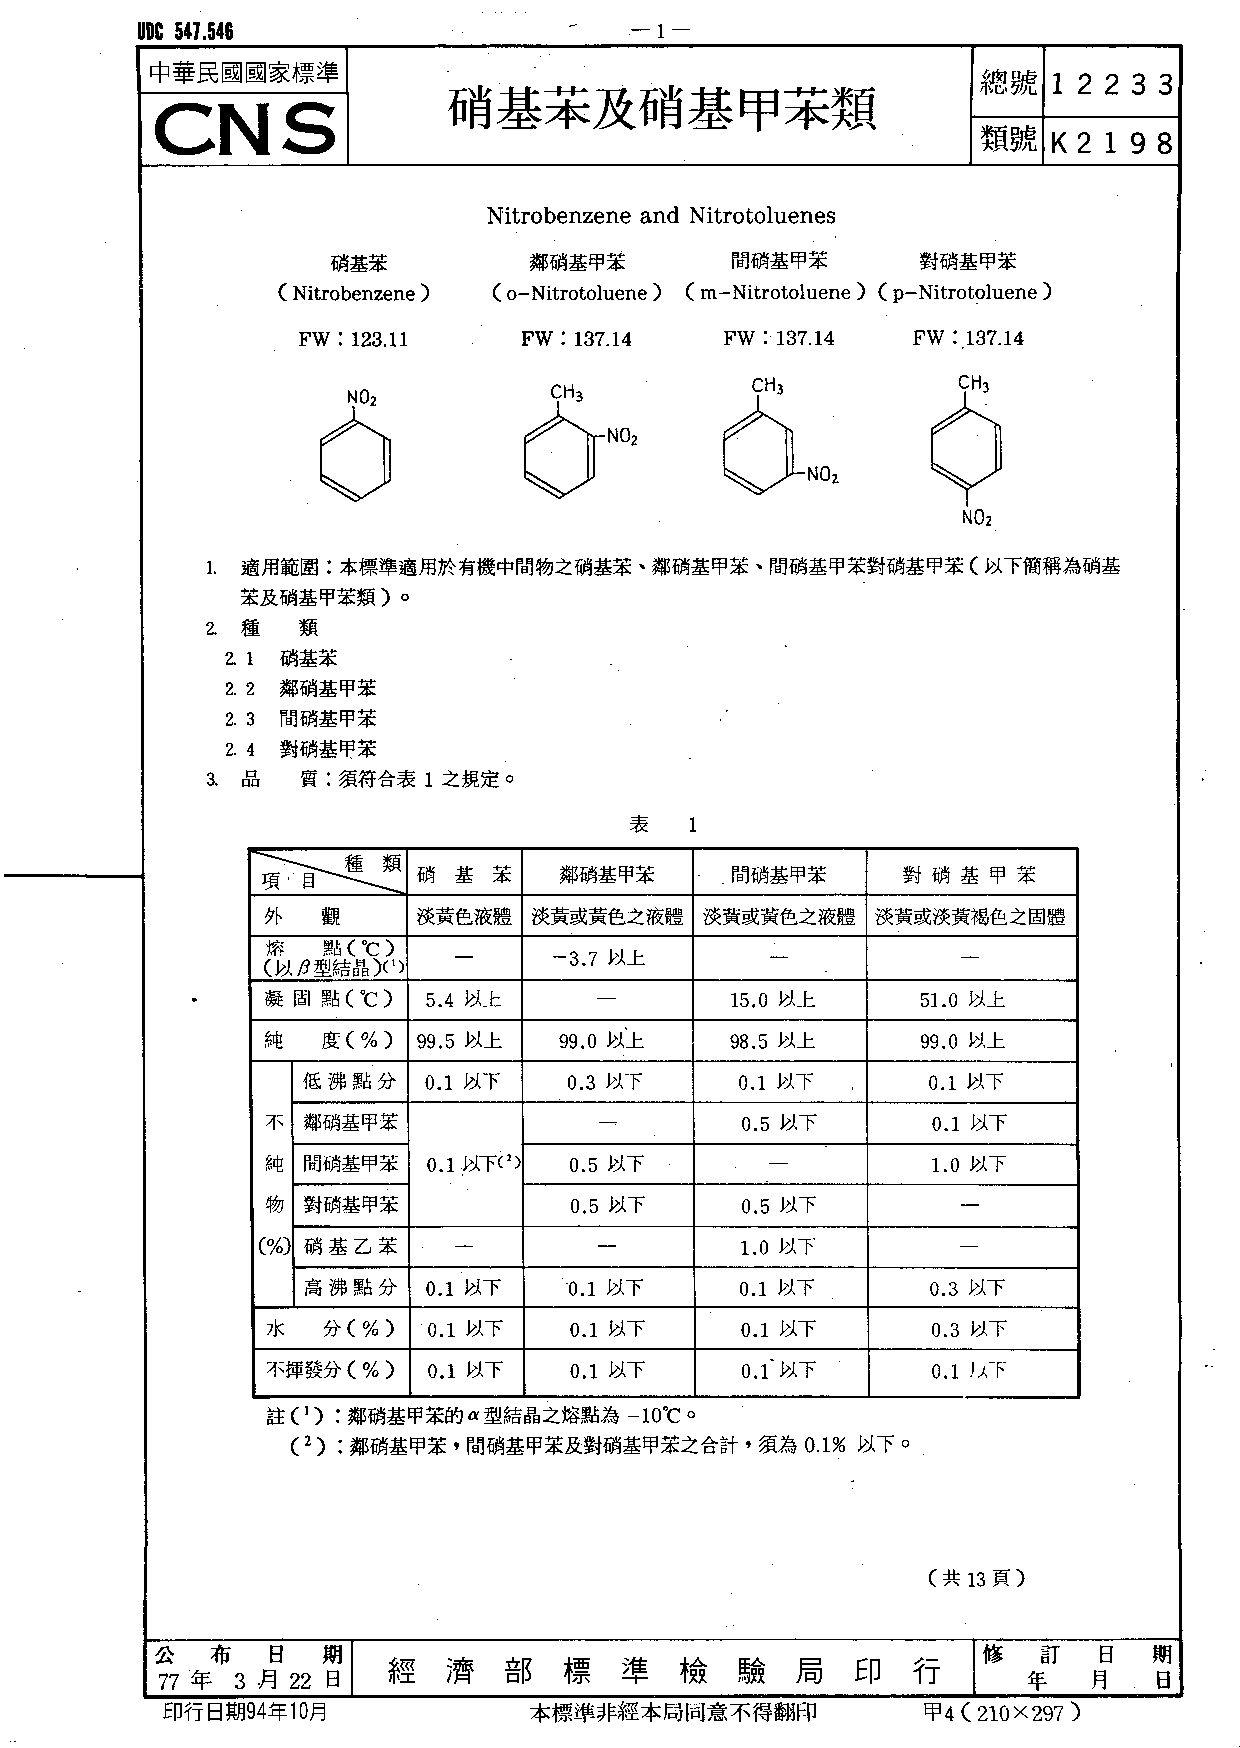 CNS 12233-1988封面图